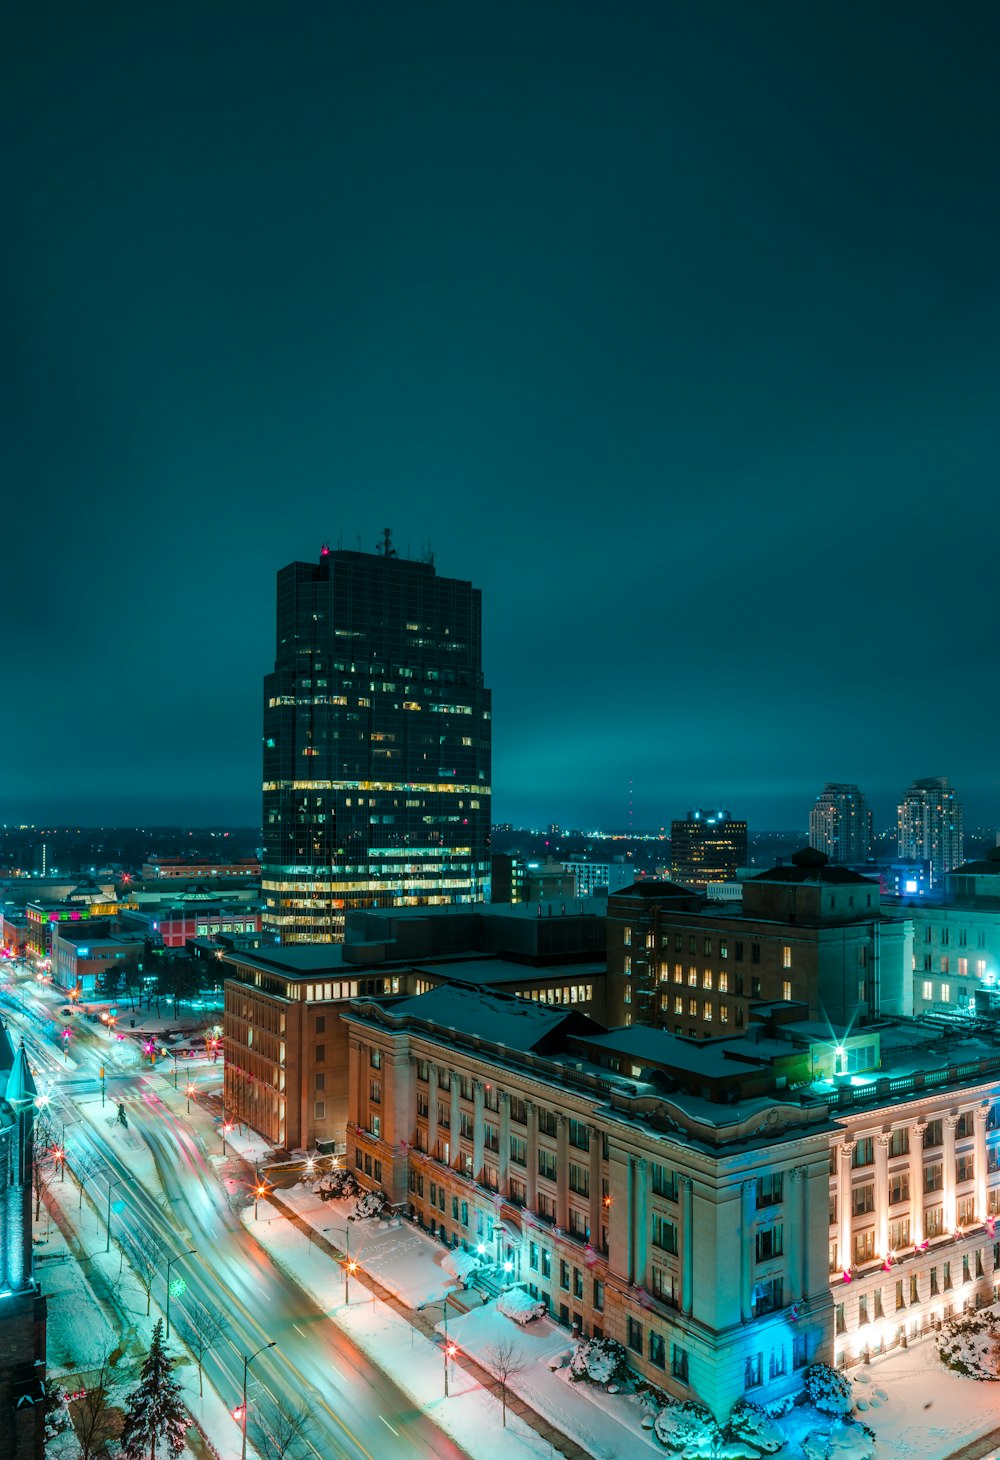 Photographie aérienne de bâtiments urbains éclairés la nuit